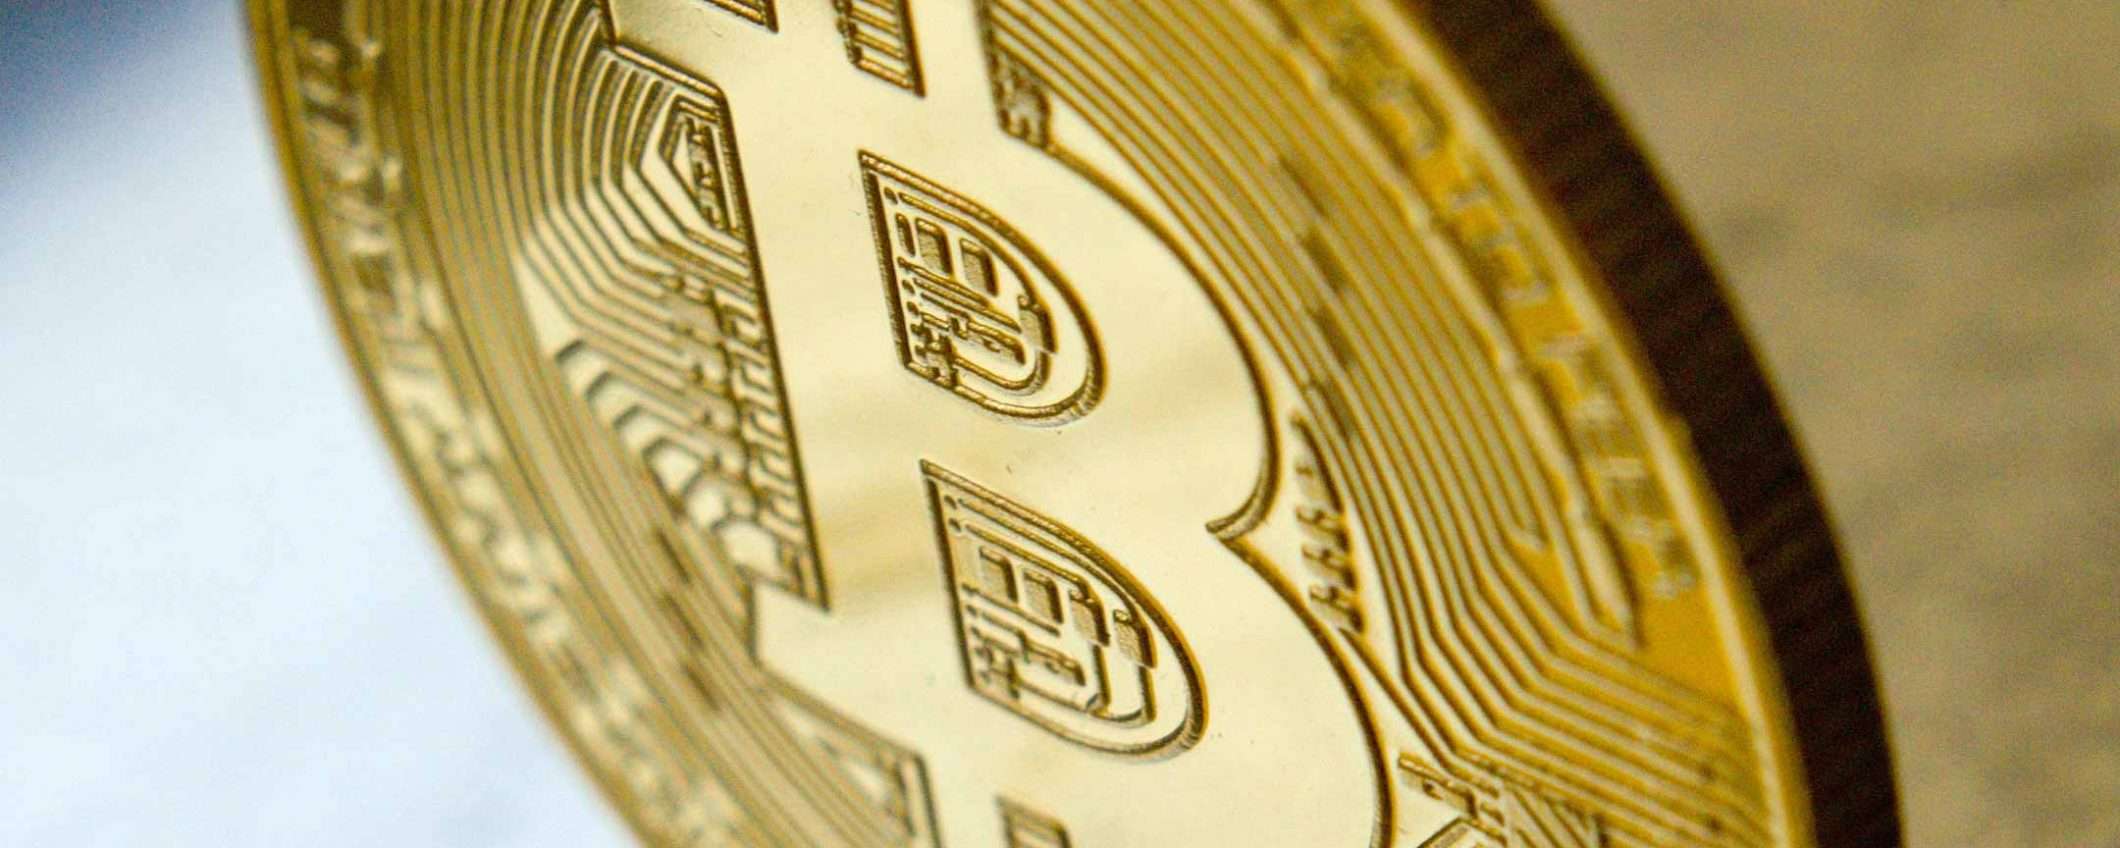 Bitcoin cresce ancora: superati i 51000 dollari